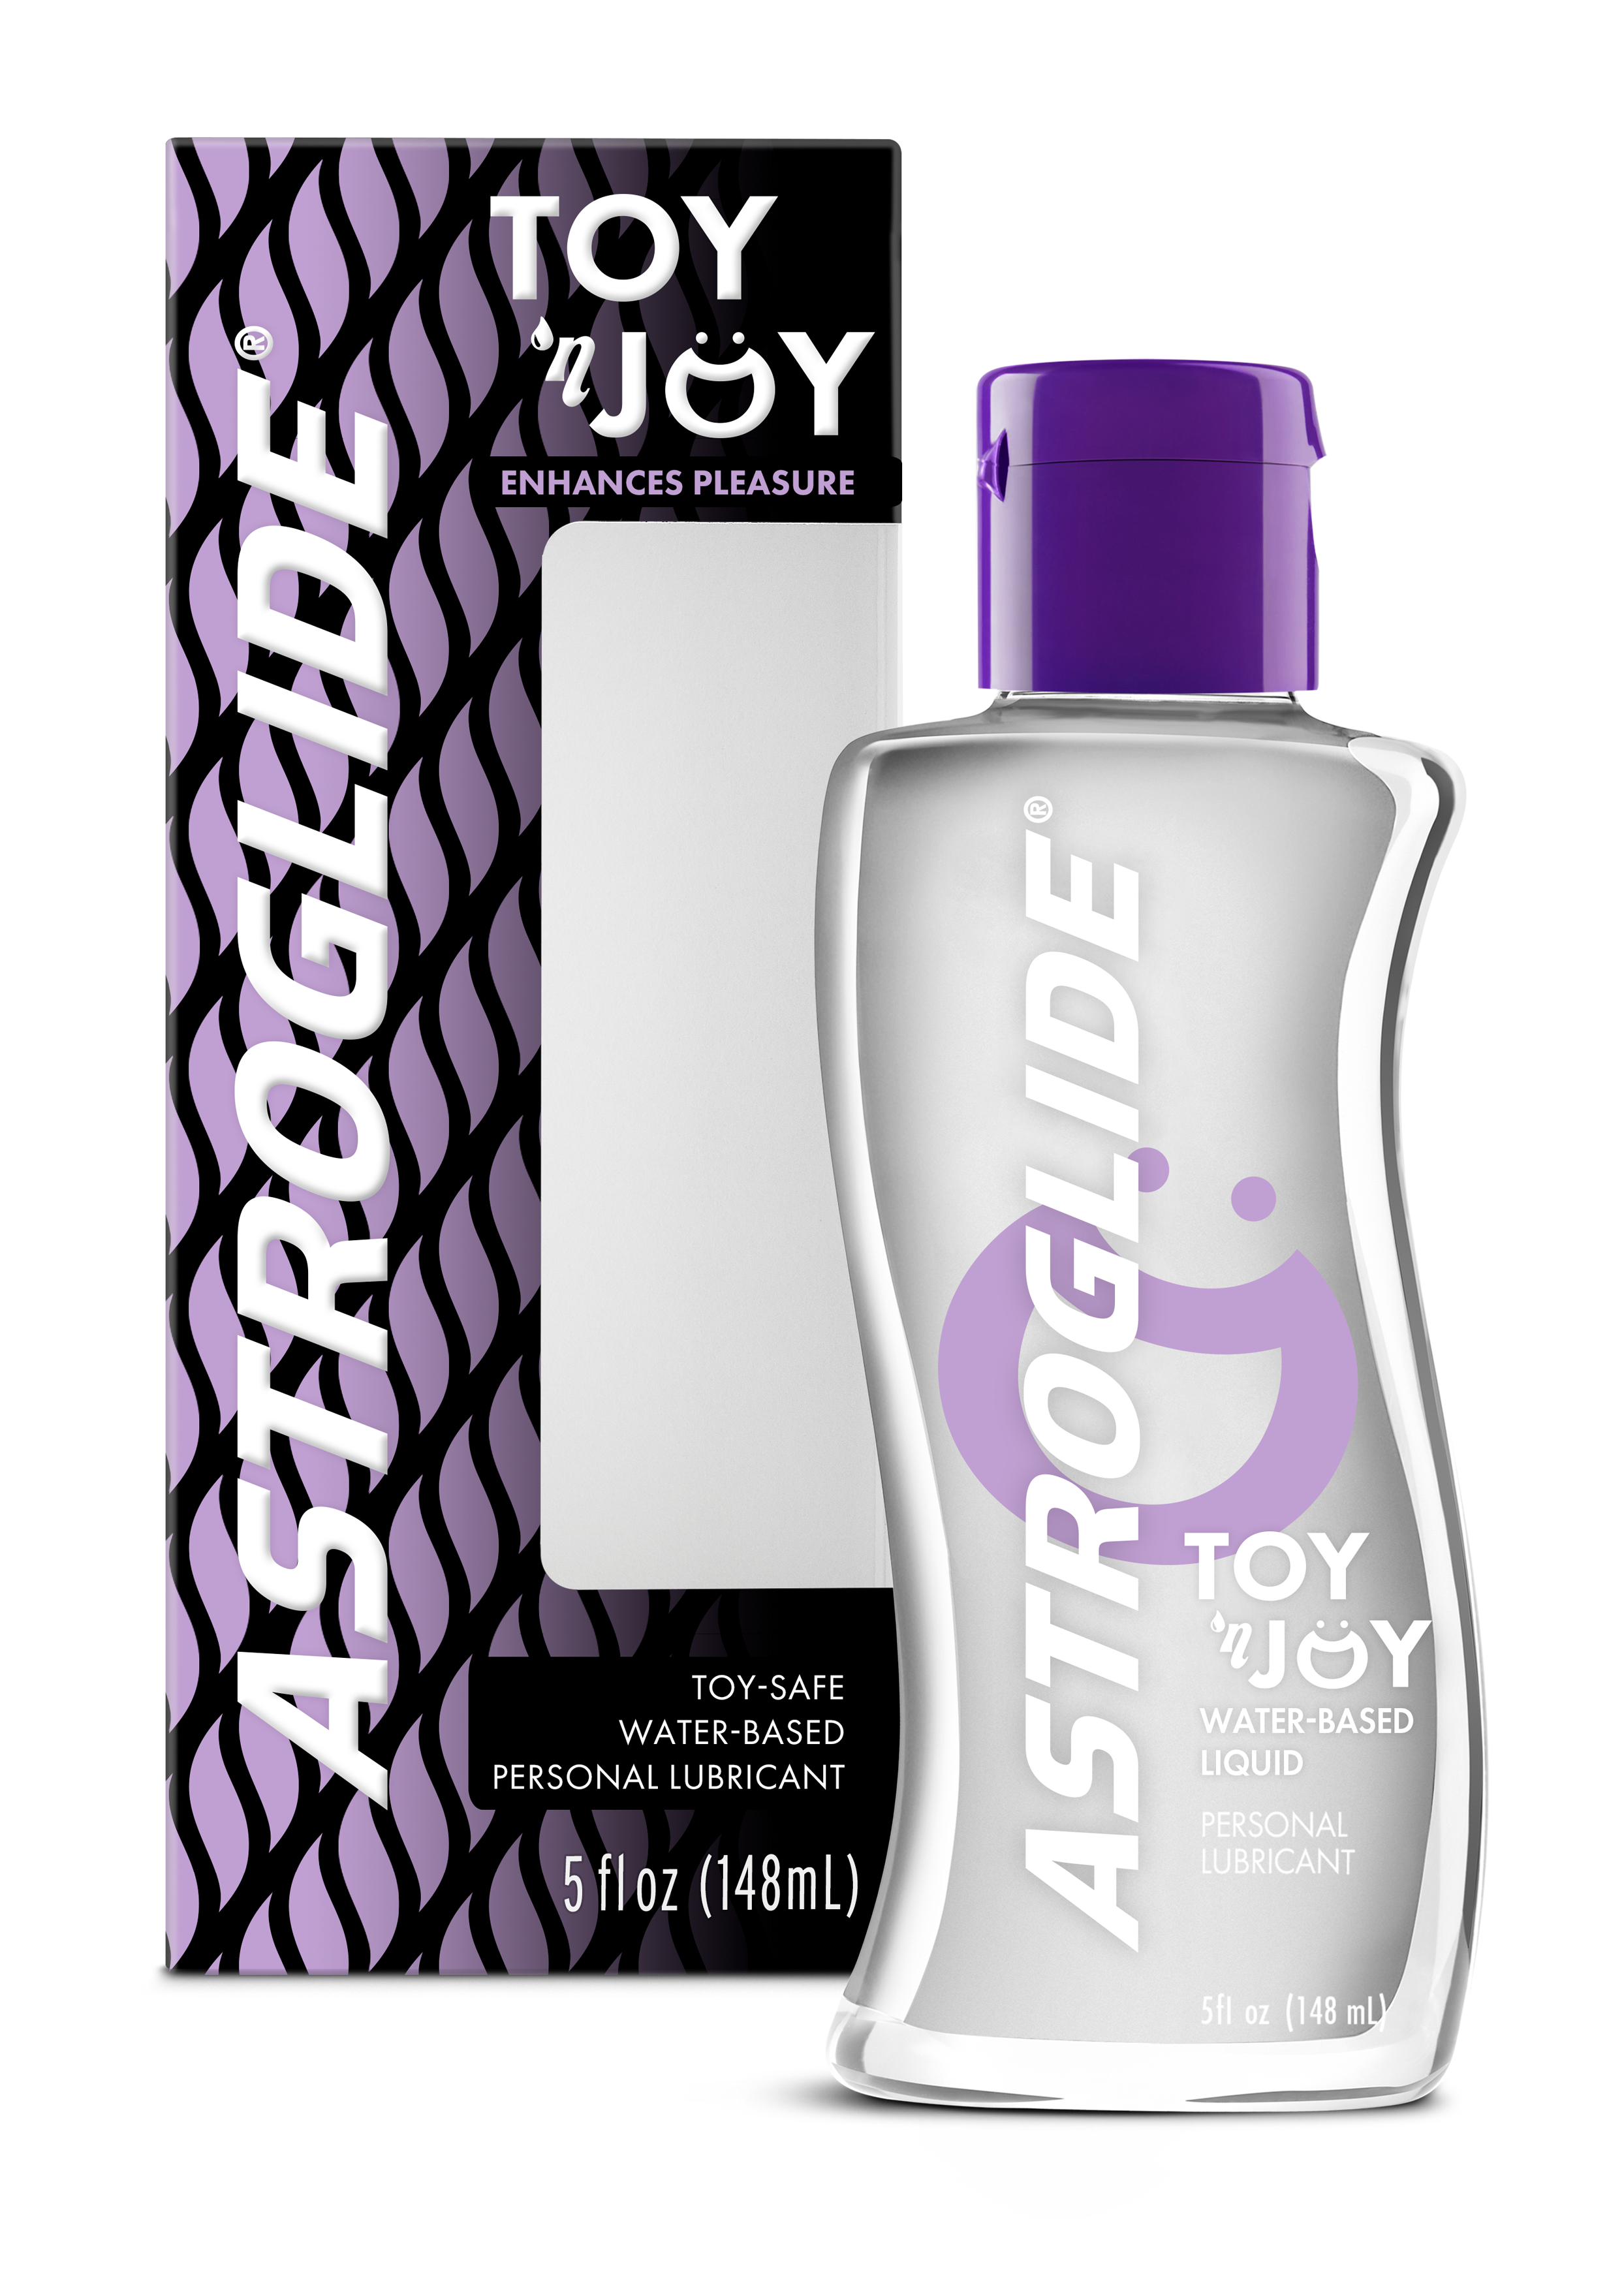 ASTROGLIDE Toy 'n Joy® Liquid